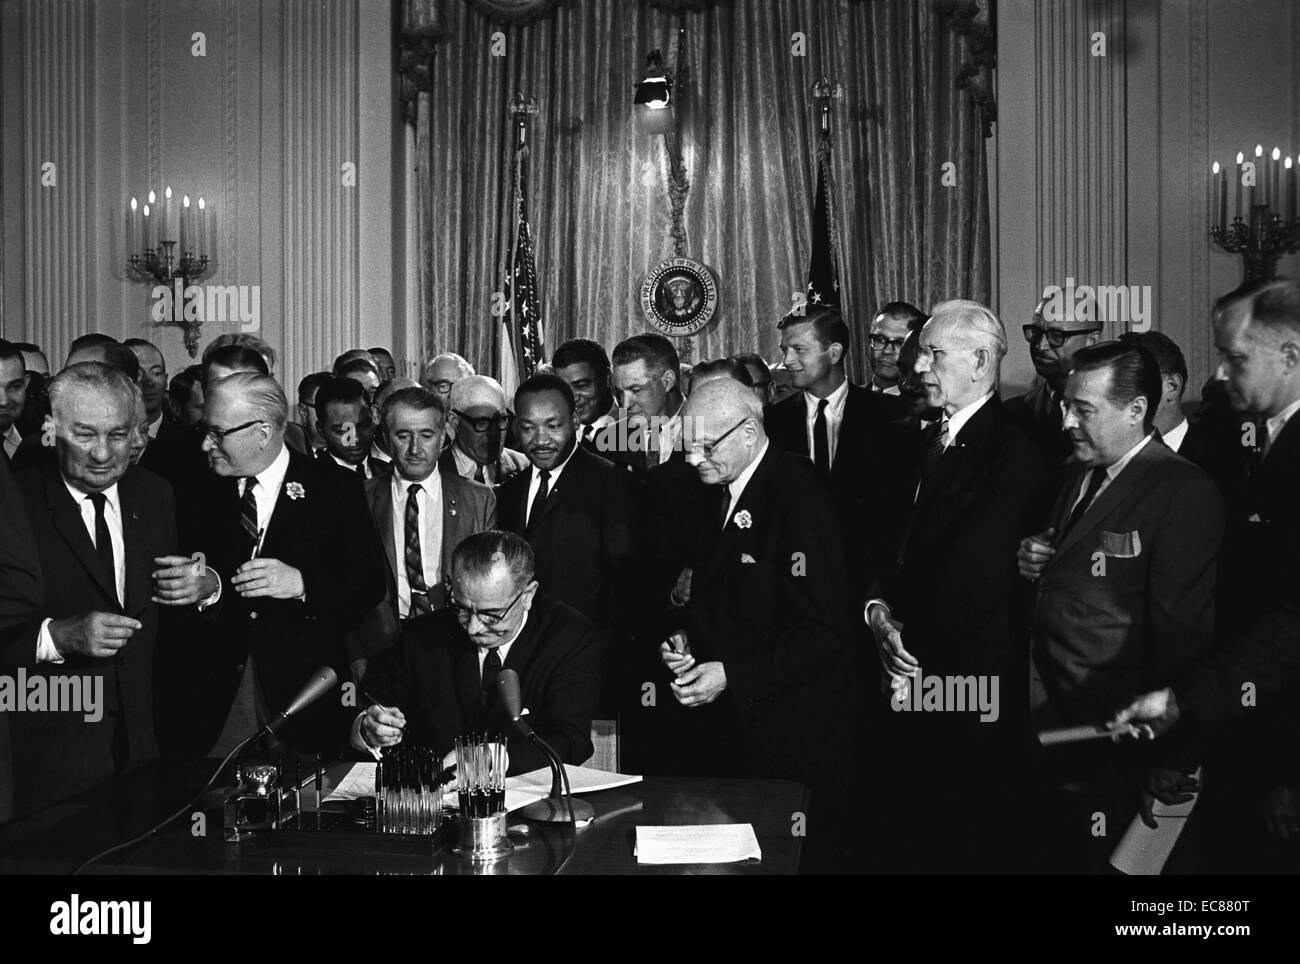 Photographie de Lyndon Johnson, président des États-Unis d'Amérique, la signature de la Loi sur les droits civils. Derrière Johnson est Martin Luther King junior. Datée 1964 Banque D'Images